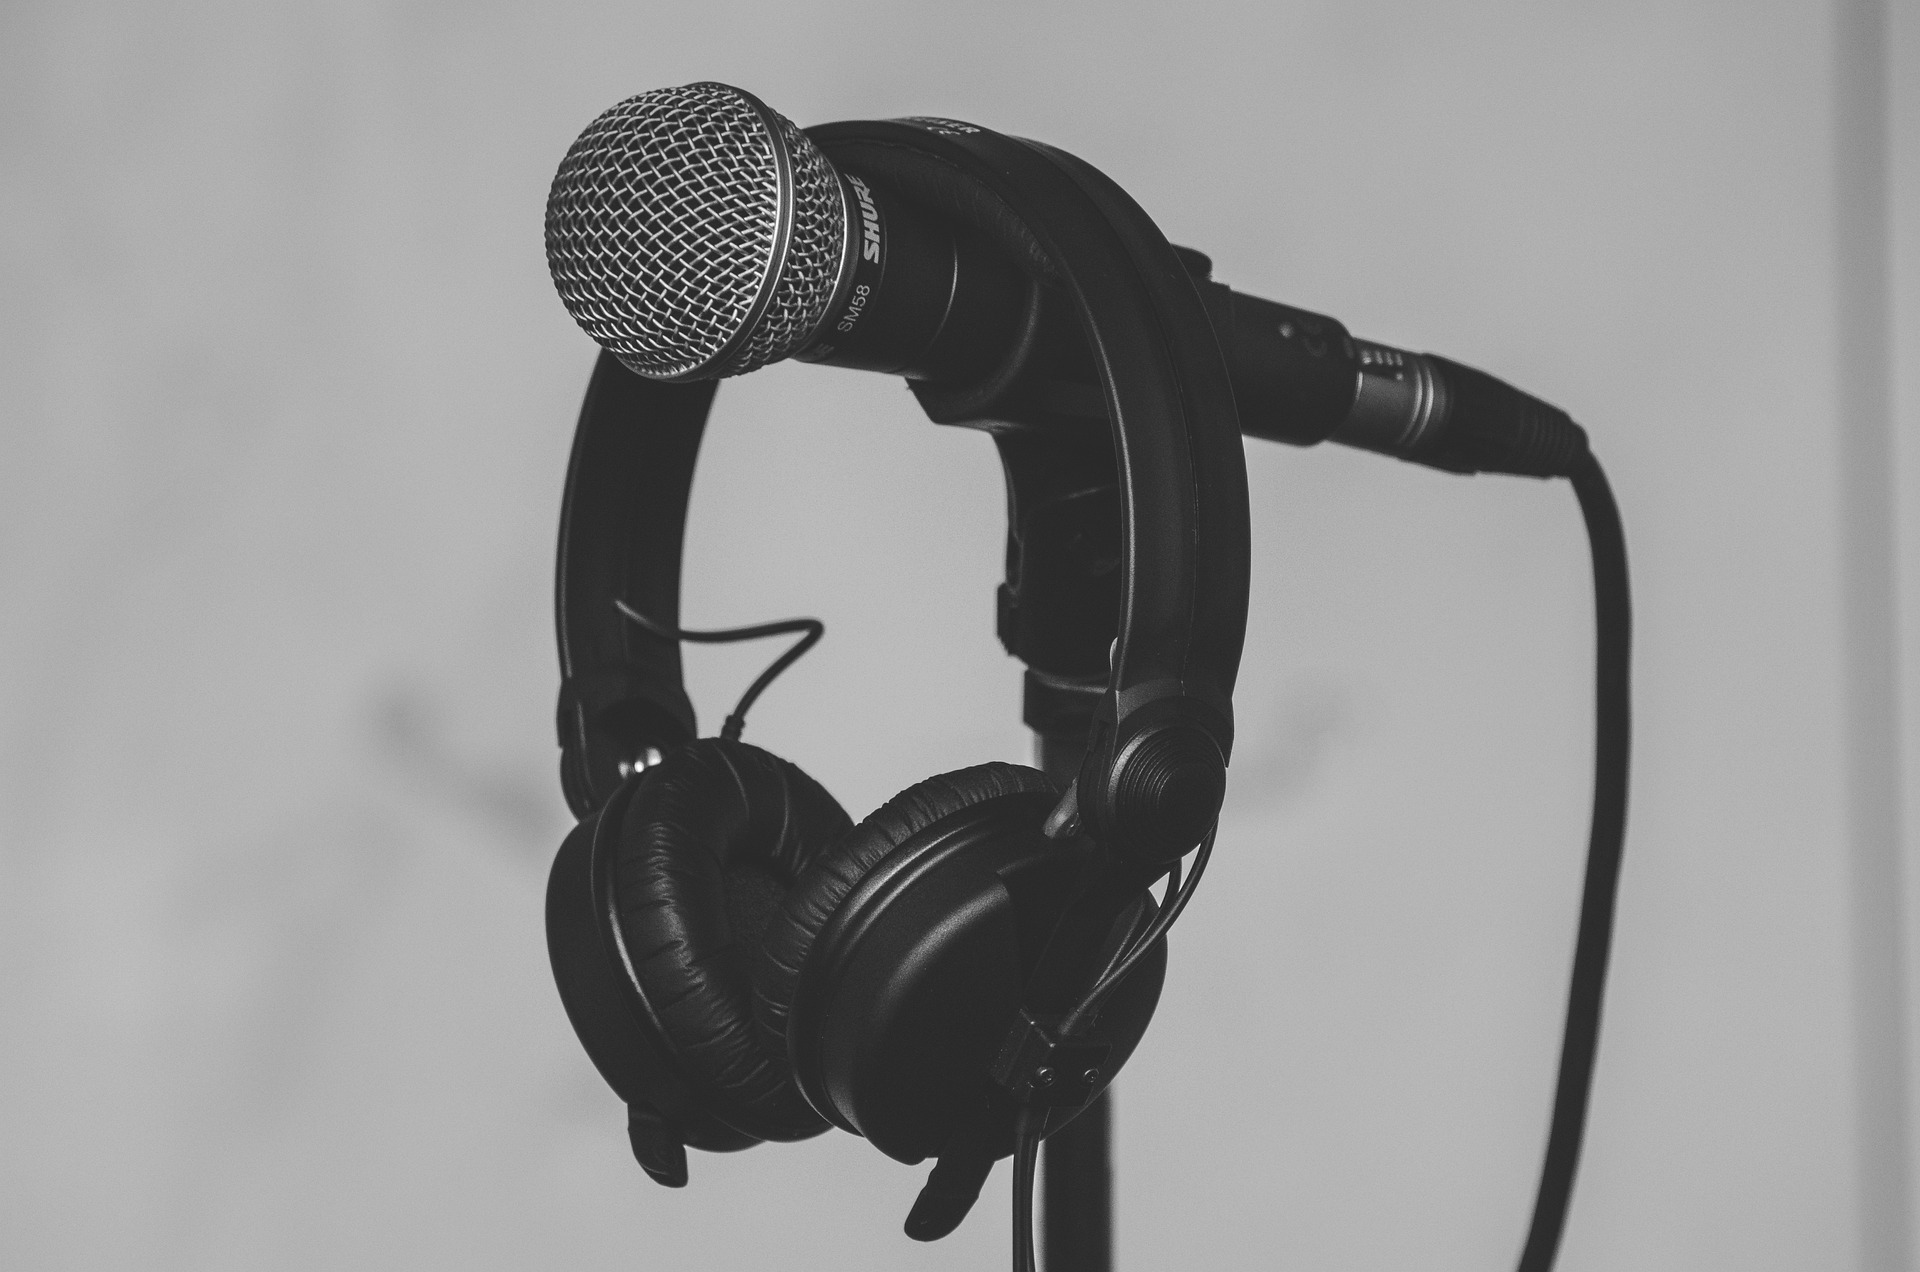 Jaki mikrofon do nagrywania podcastów wybrać?